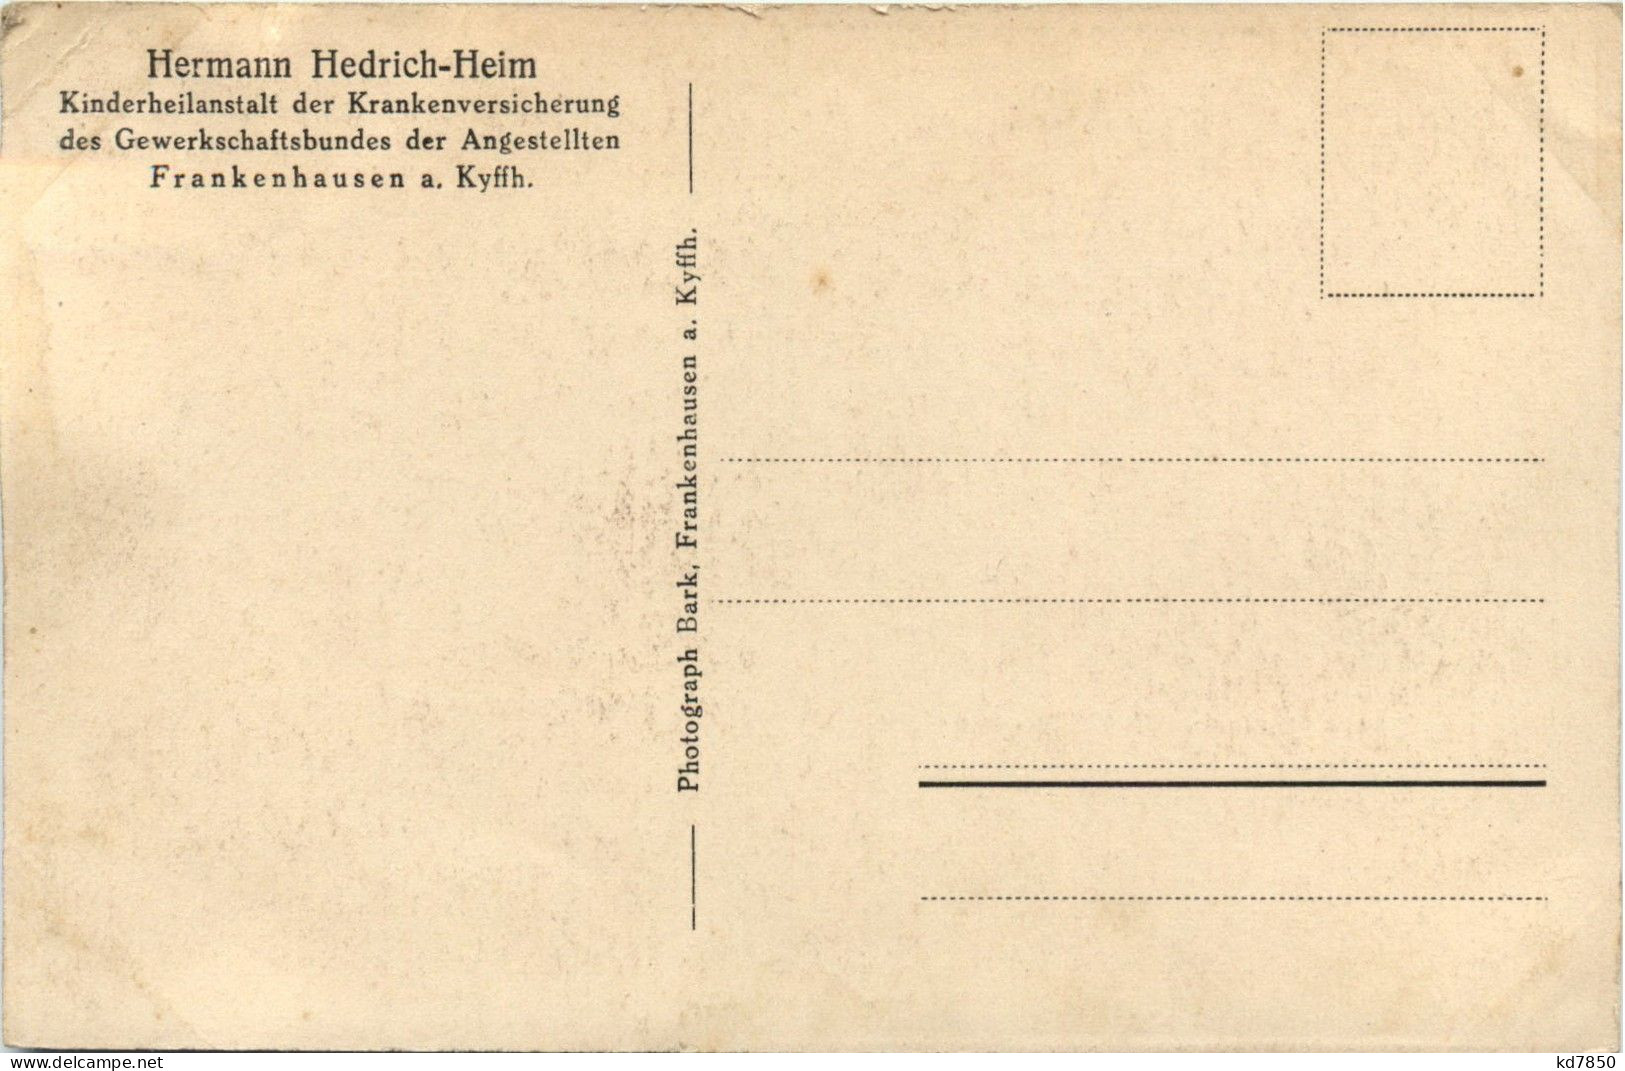 Solbad Frankenhausen - Heinrich Hedrich-Heim, Haupteingangmit Terrasseund Leuchtfontaine - Kyffhäuser